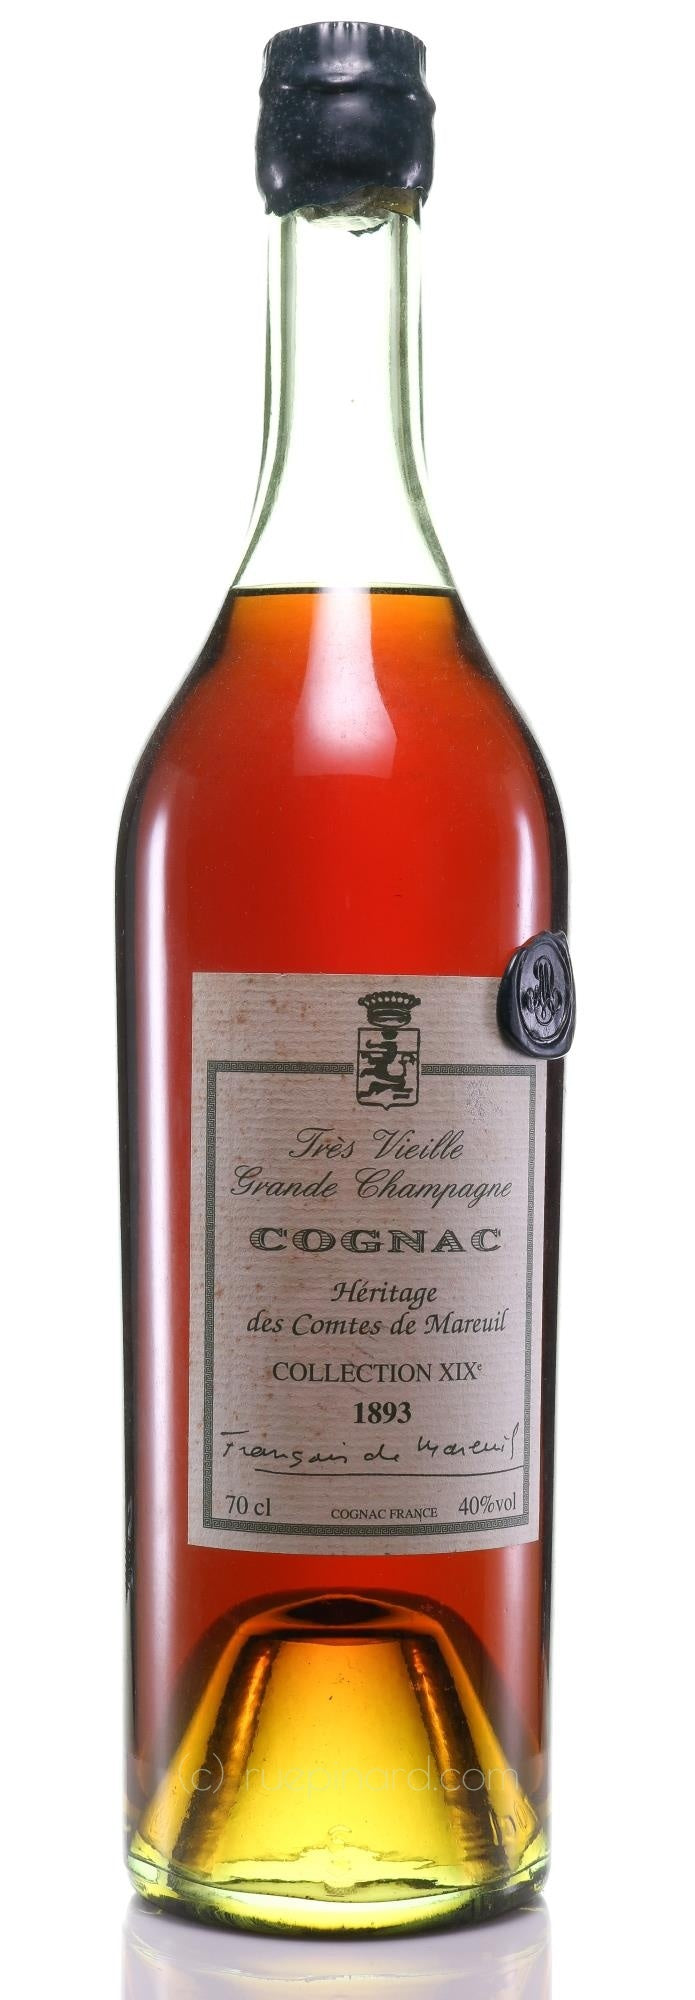 Cognac 1893 Comtes de Mareuil Heritage des Comtes de Mareuil XIX Collection Trés Vieille Grande Champagne - Rue Pinard